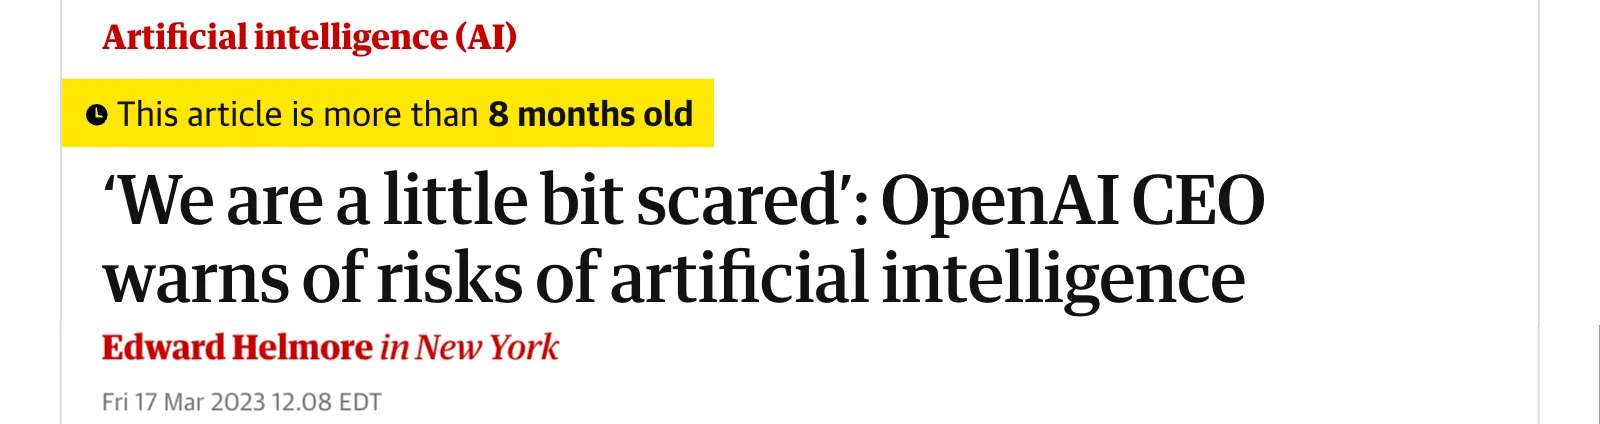 一张新闻标题截图，标题为'我们有点害怕': OpenAI 首席执行官对人工智能风险的警告，作者 Edward Helmore 在纽约，日期为 2023 年 3 月 17 日，来源于 The Guardian.